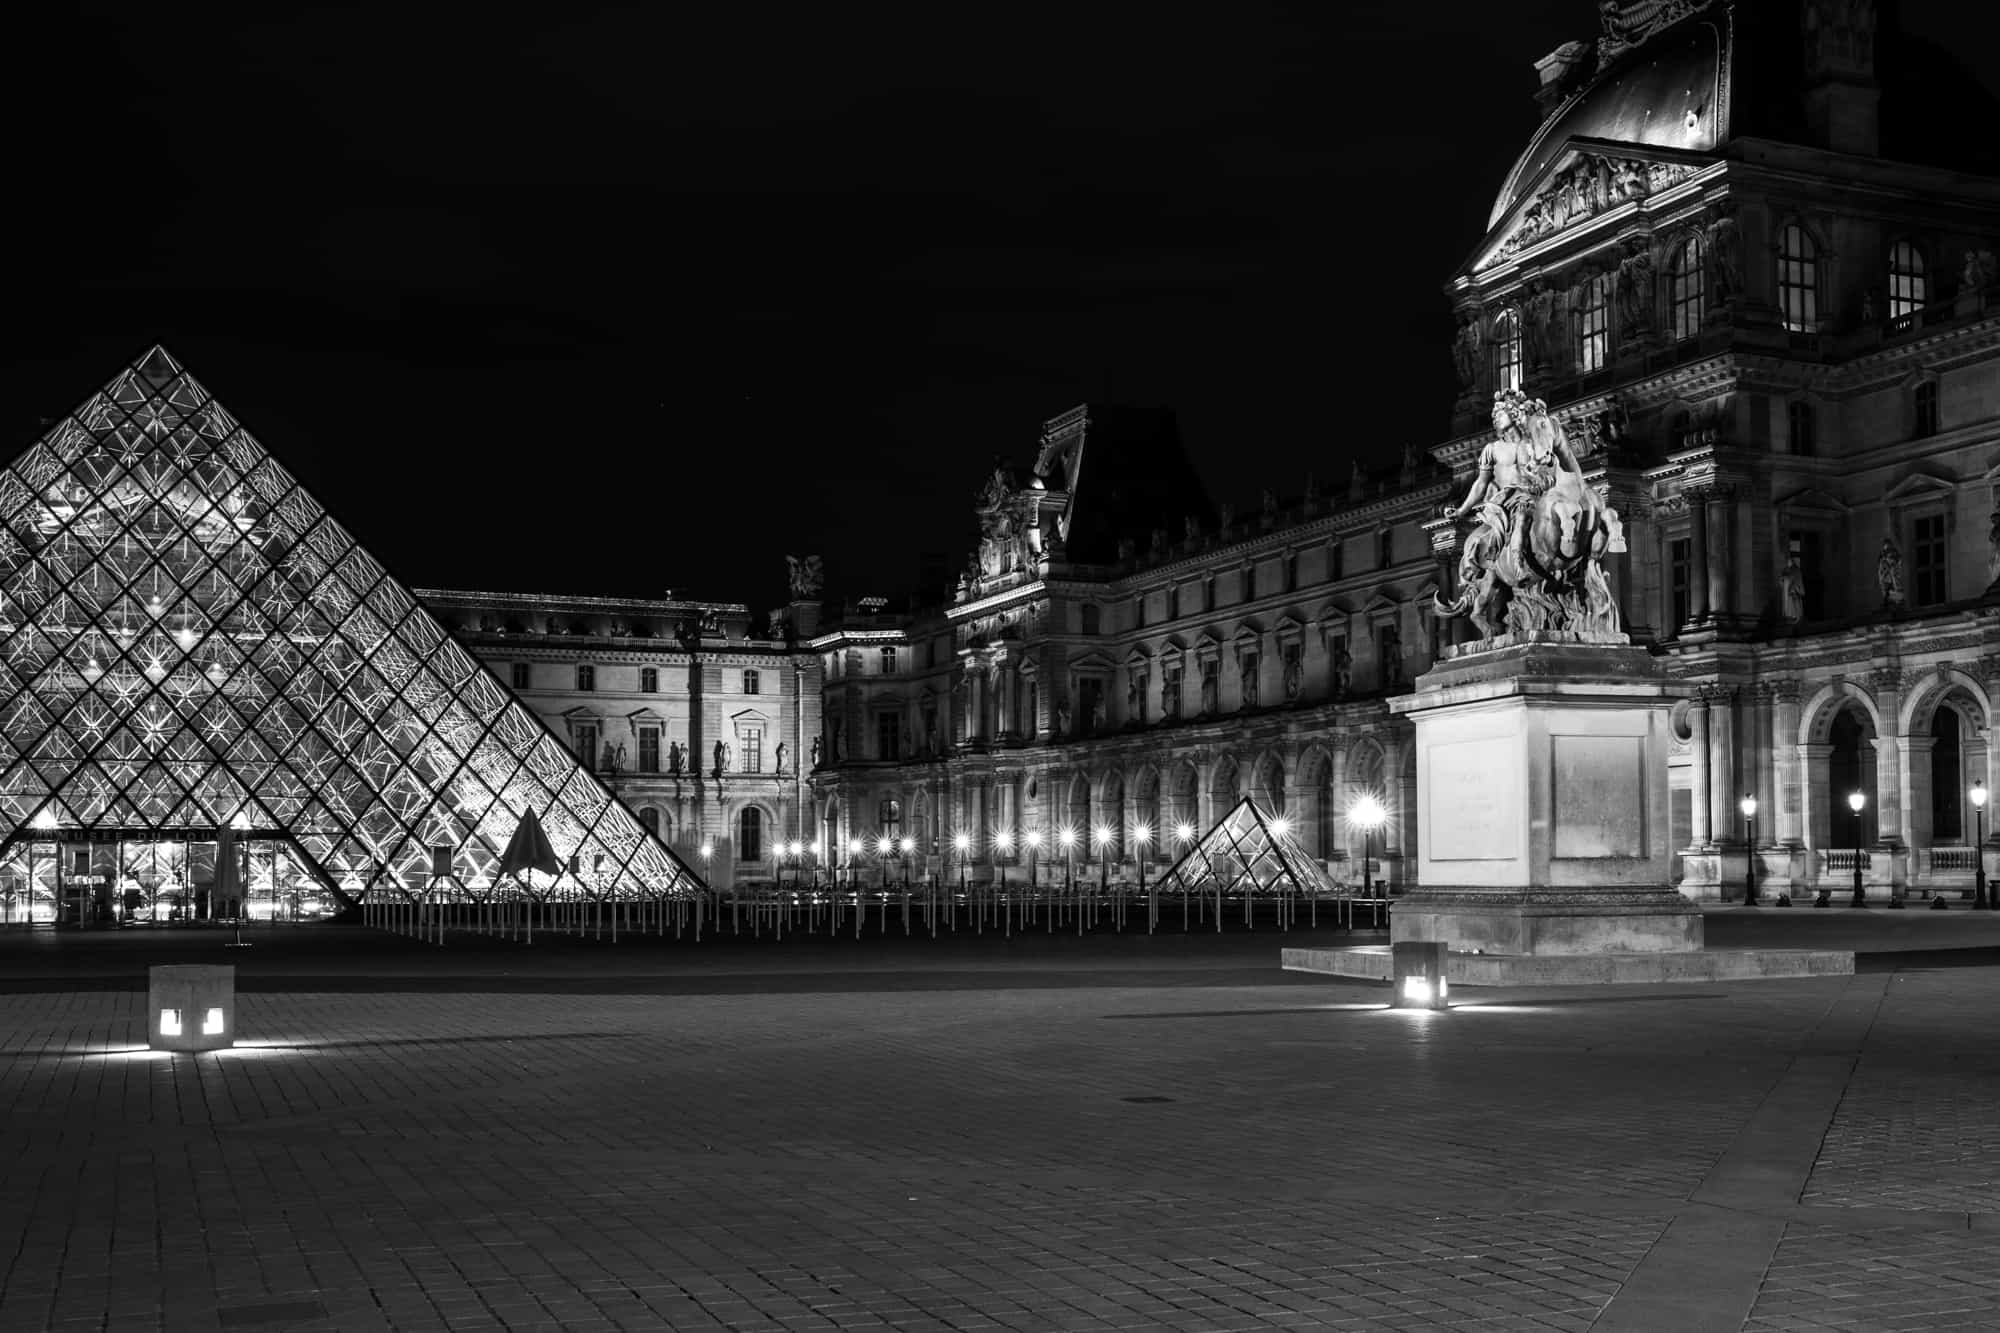 Le Louvre Museum